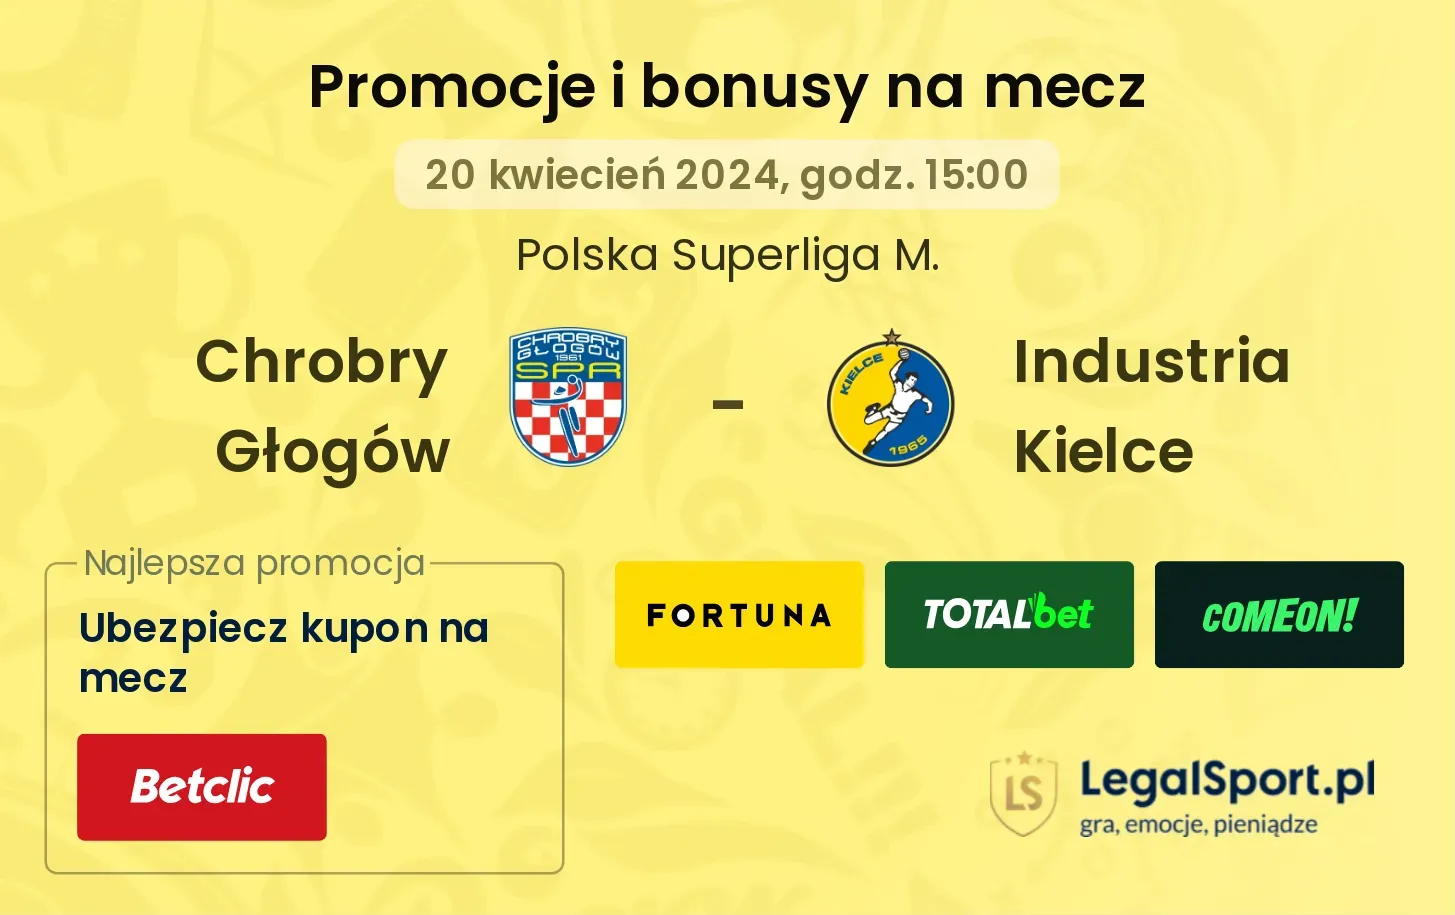 Chrobry Głogów - Industria Kielce promocje bonusy na mecz